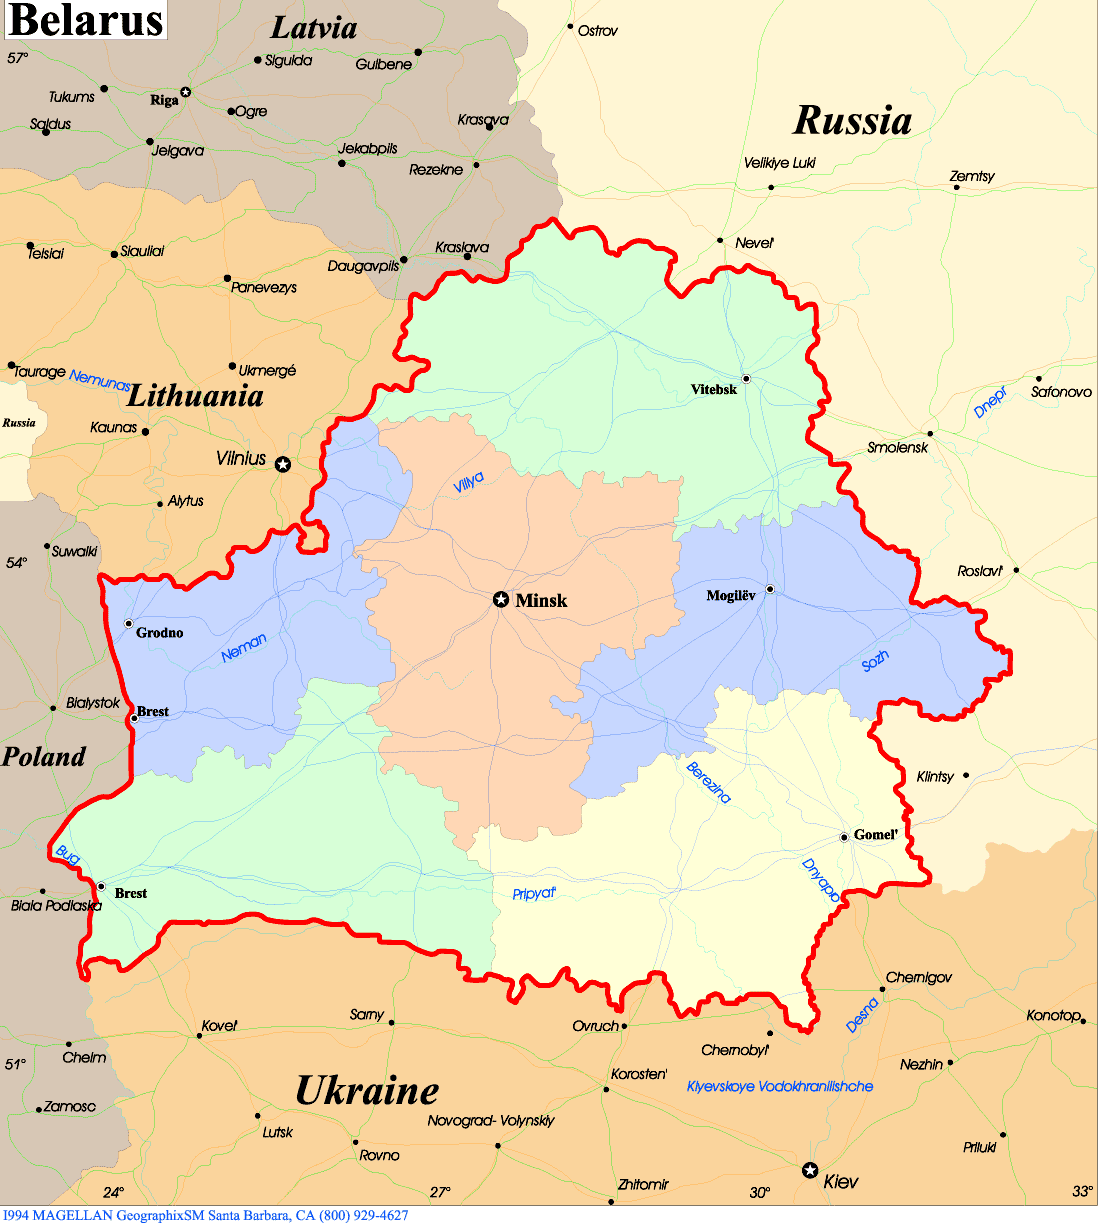 Map of Belarus_2.jpg